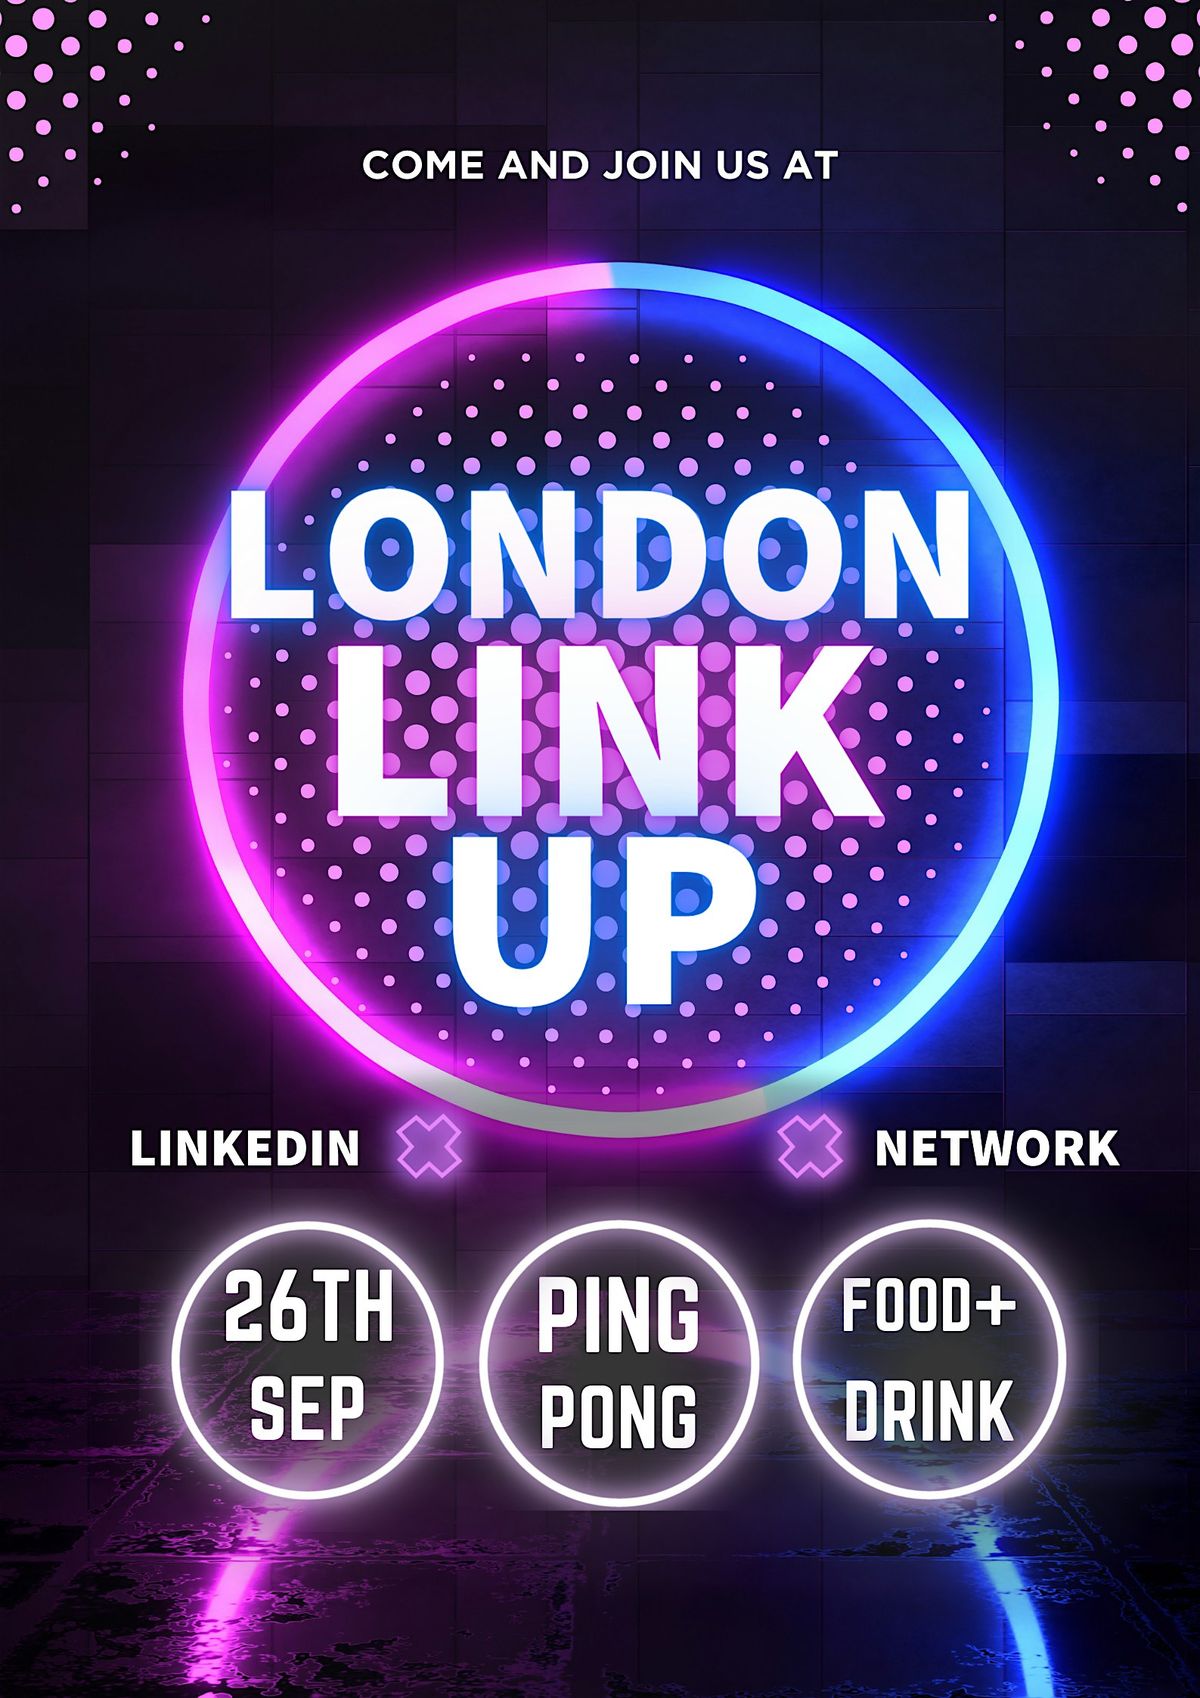 London Link Up Returns